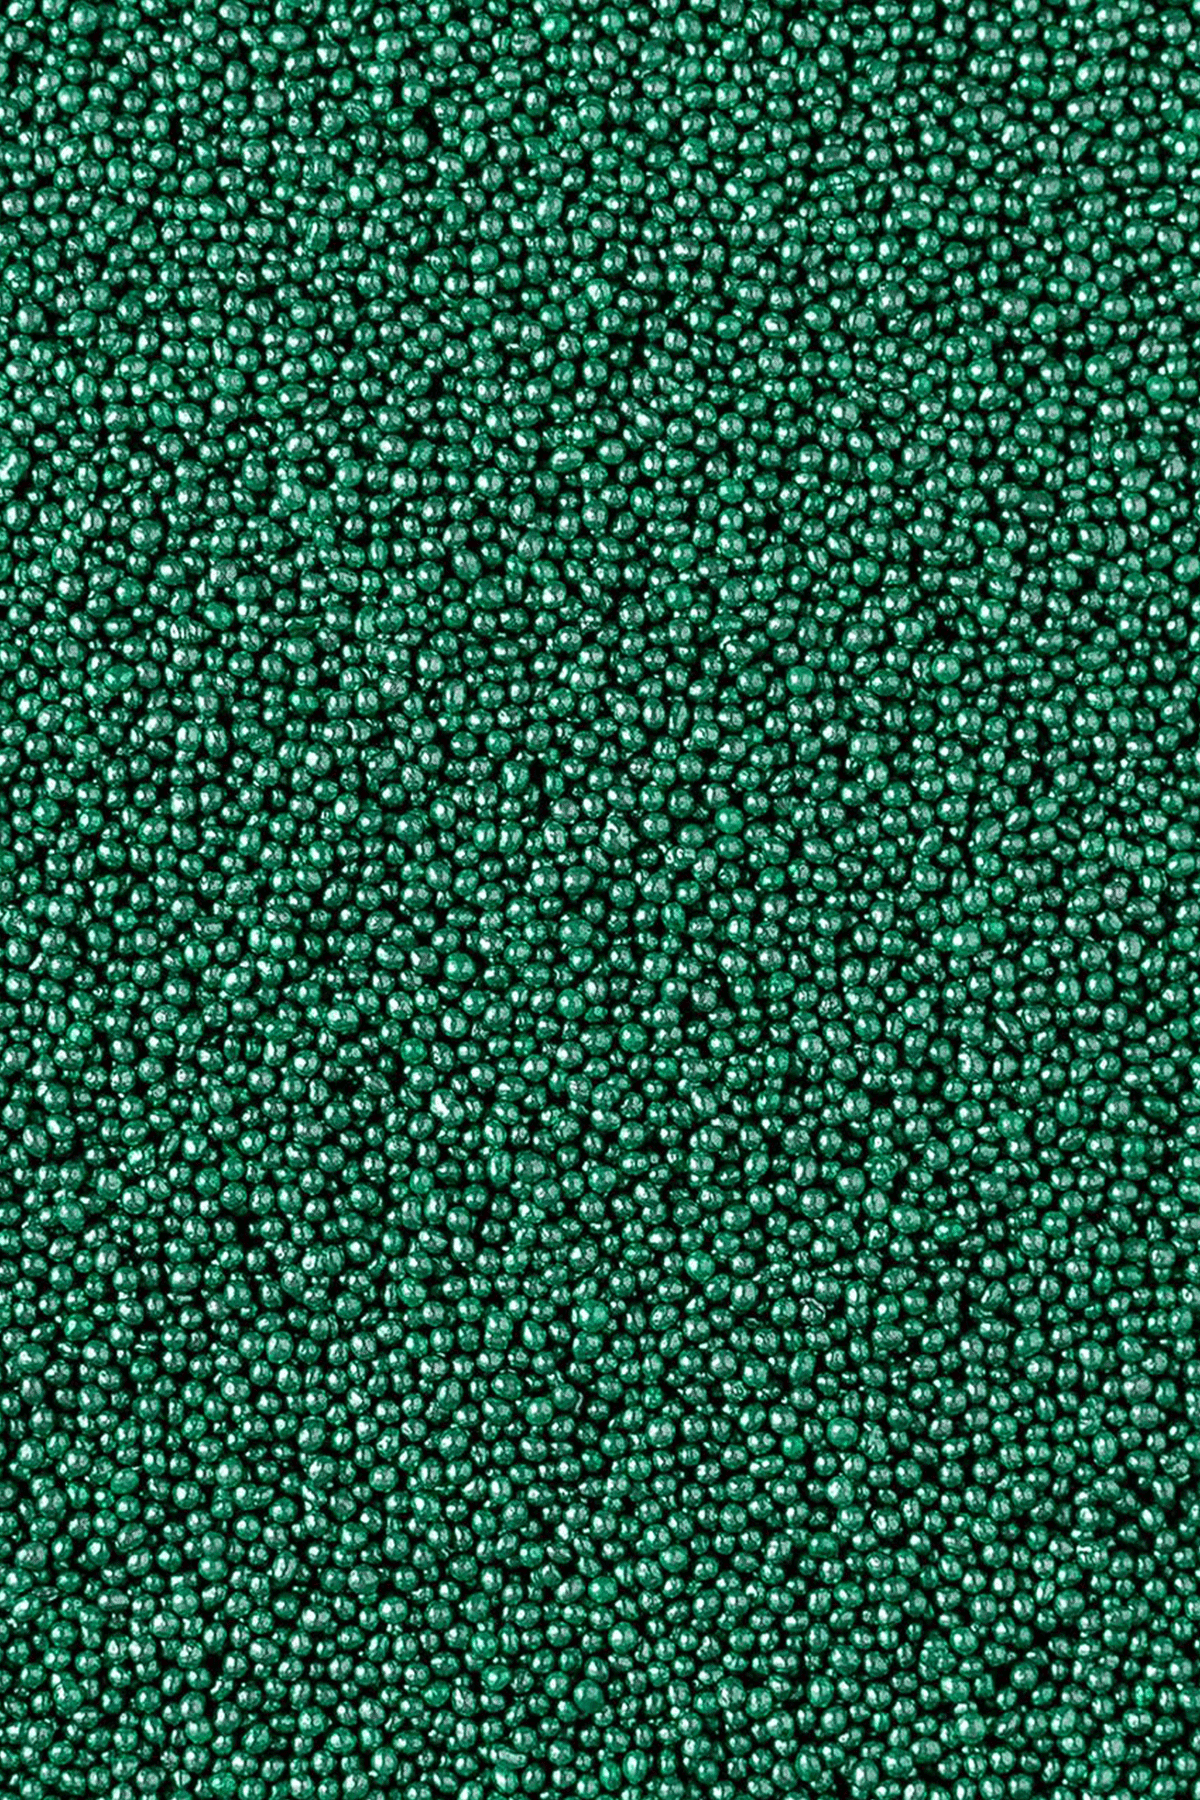 Metallic Pearls - Green 2mm Sprinkles Sprinkly